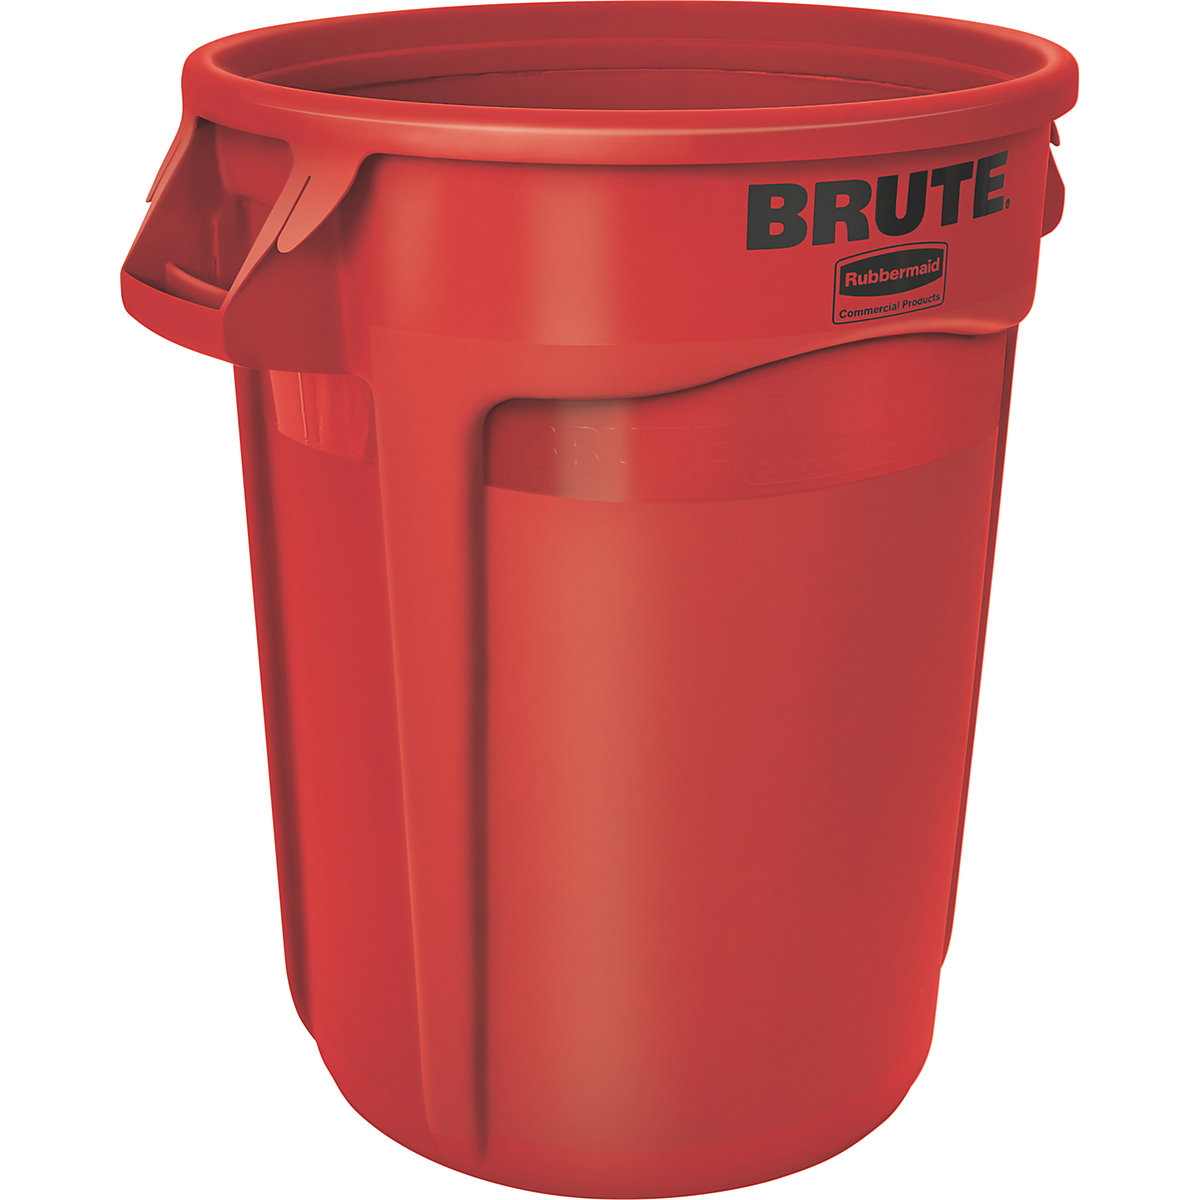 Universalcontainer BRUTE®, rund Rubbermaid, Inhalt 121 l, rot